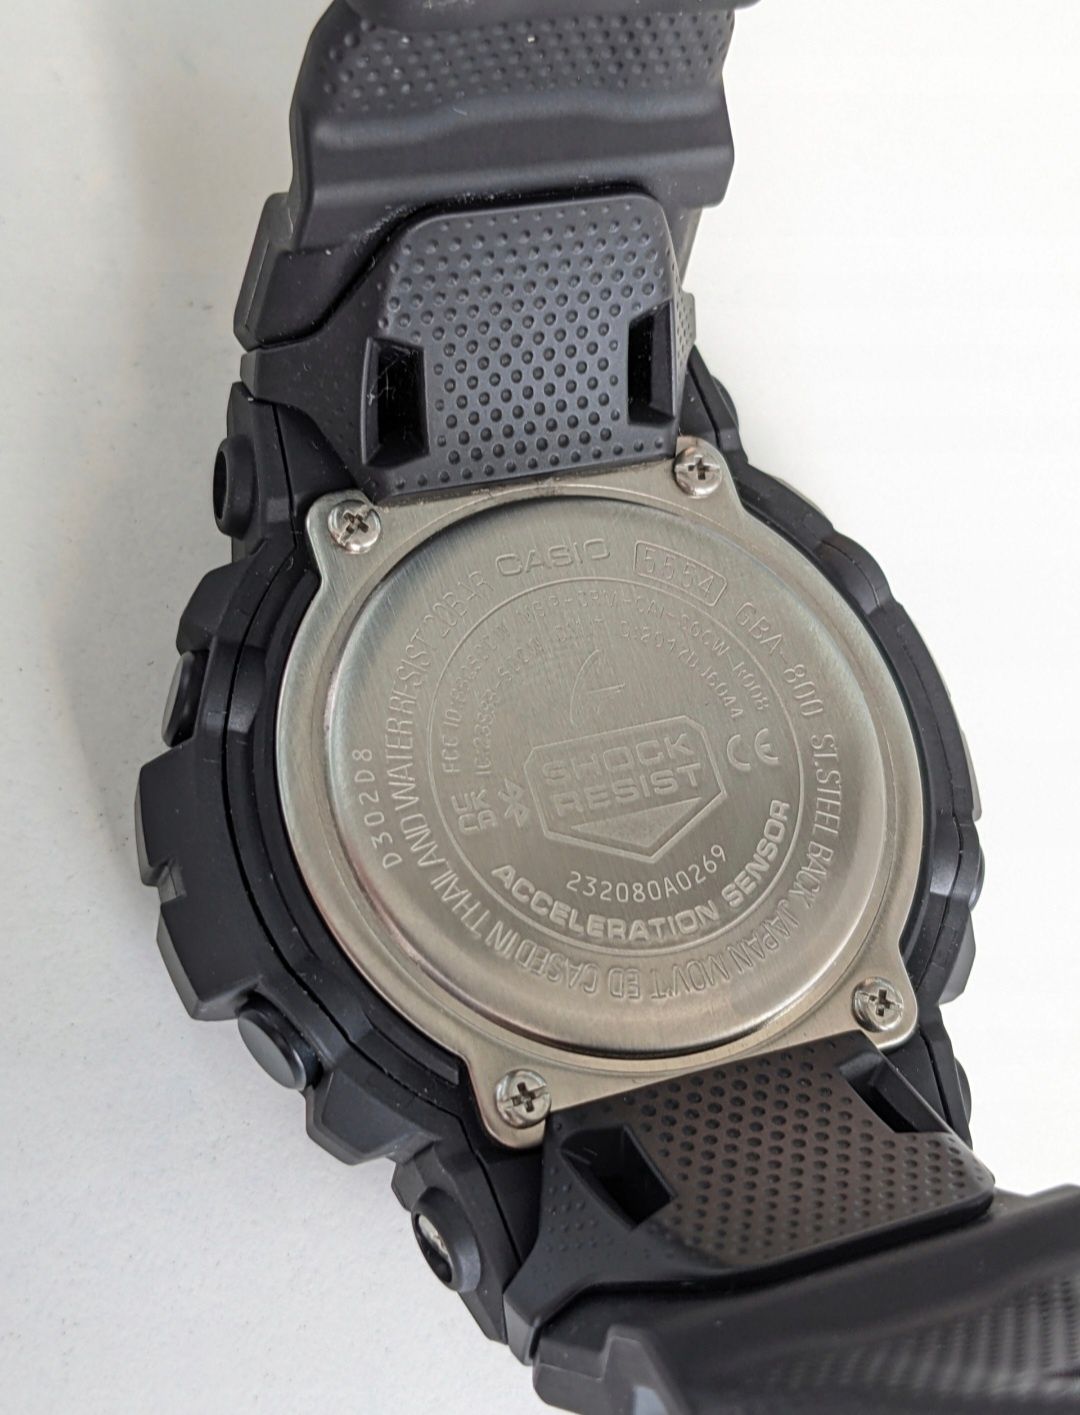 Zegarek G-SHOCK GBA-800 Casio 1 właściciel